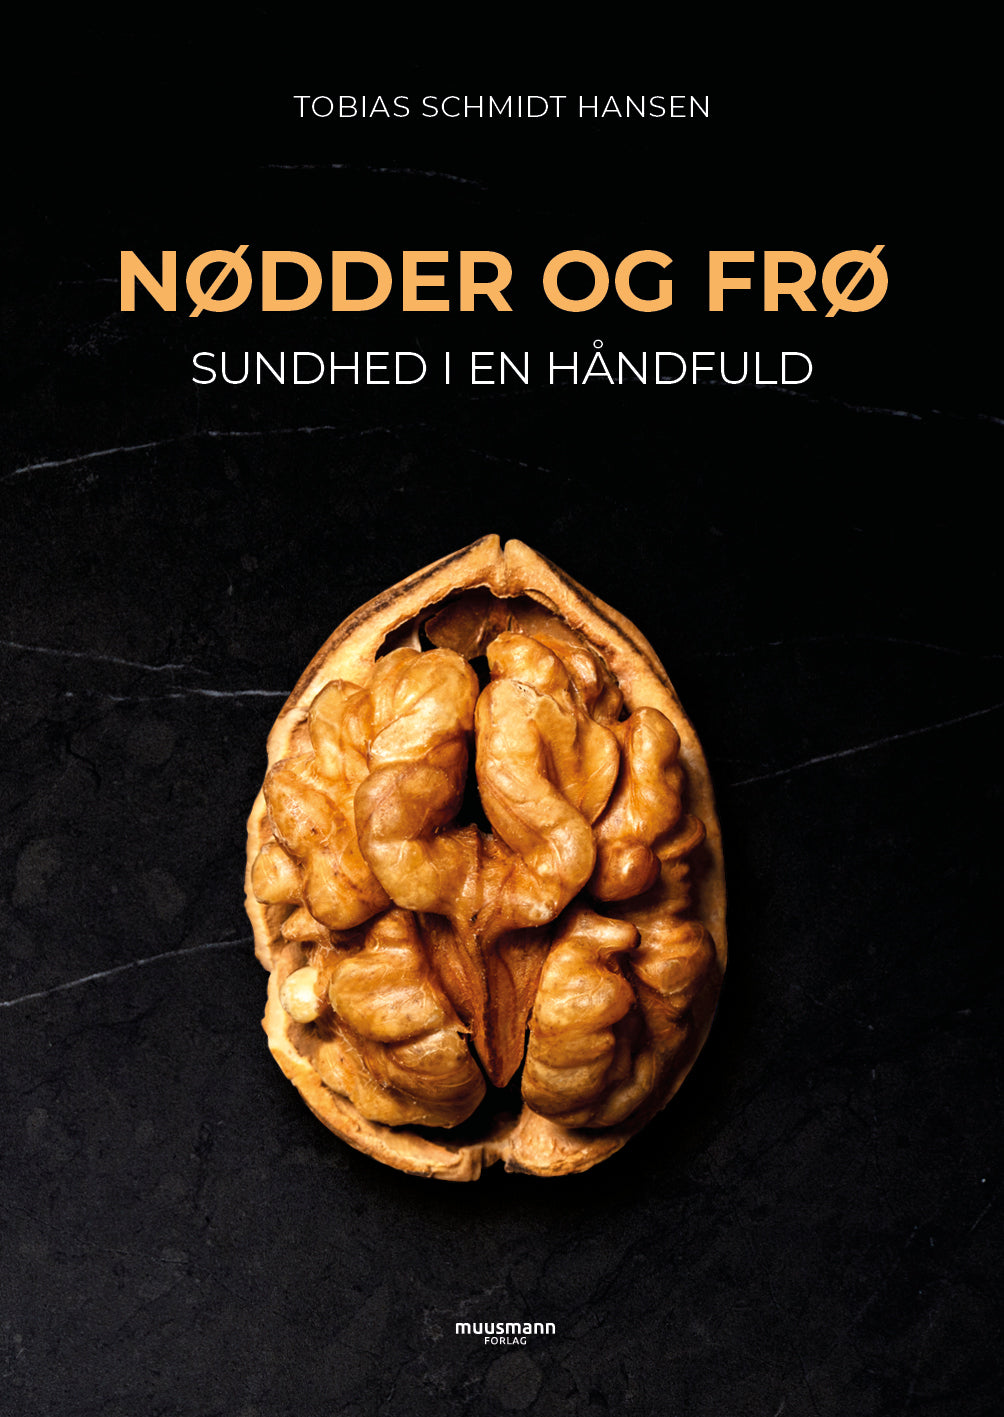 Nødder og frø - sundhed i en håndfuld af Tobias Schmidt Hansen